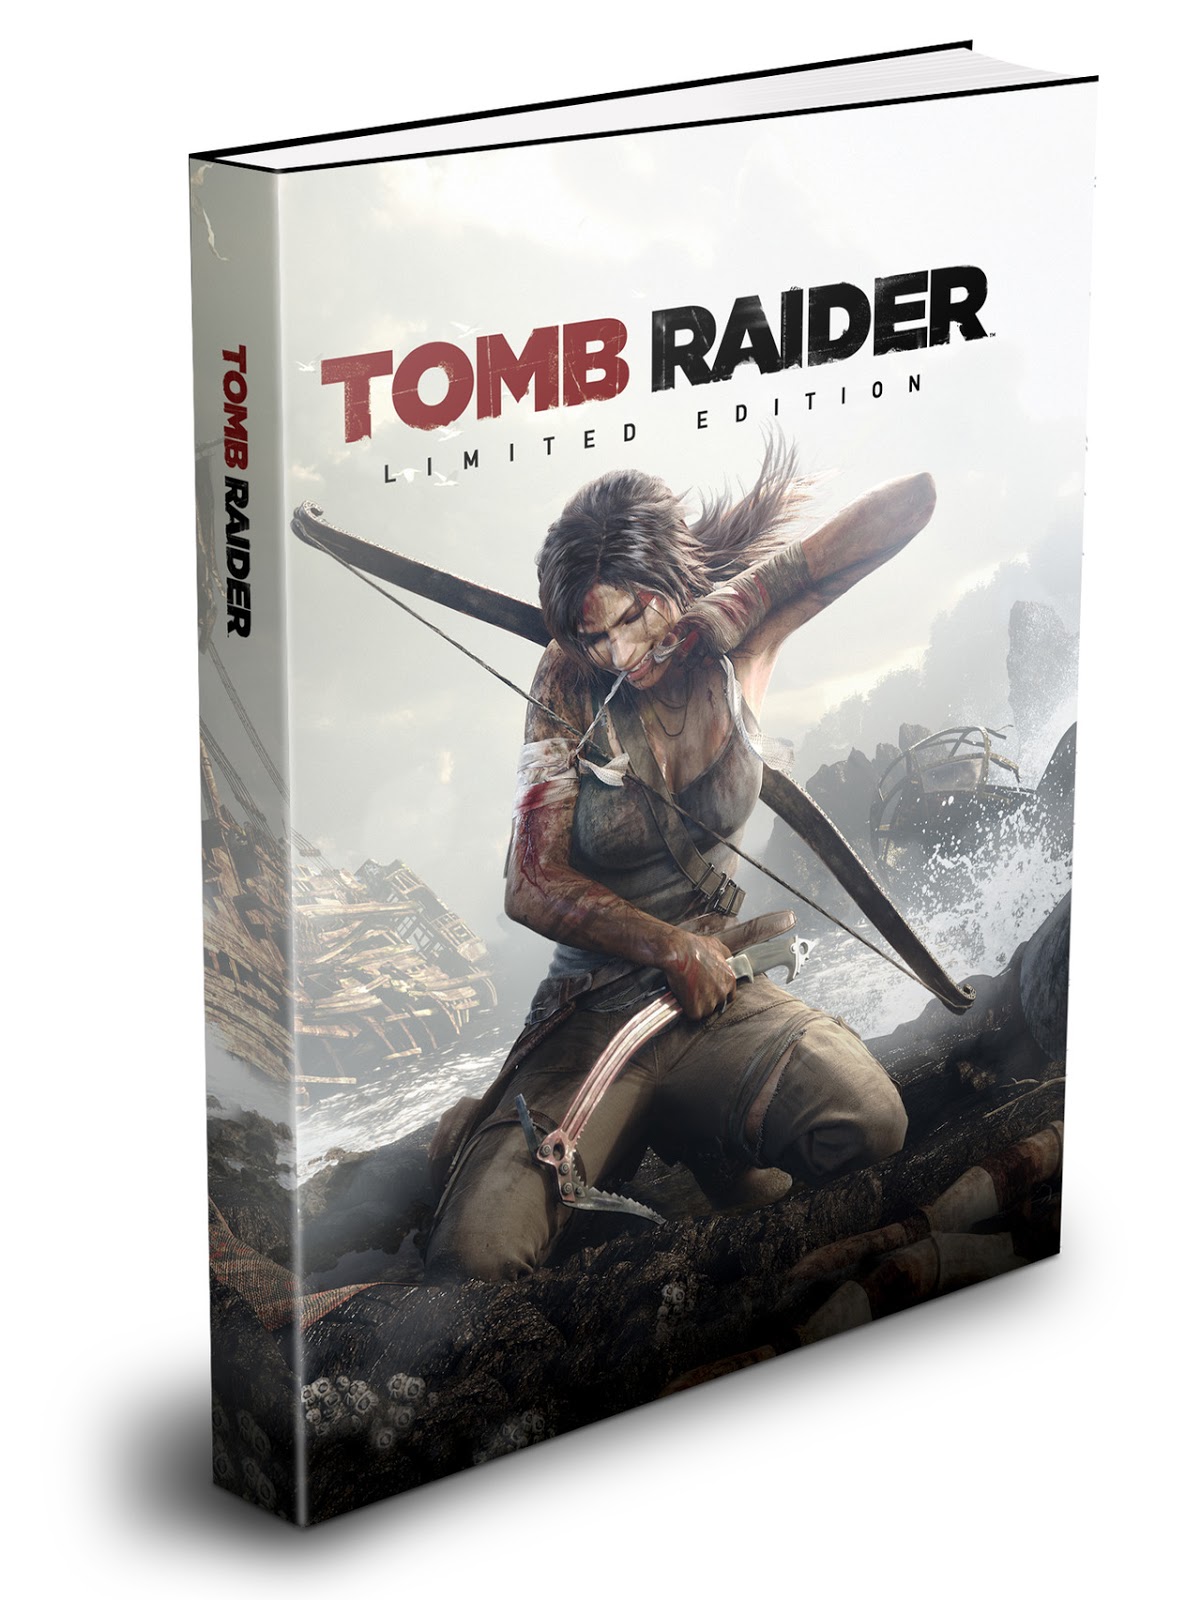 Ochtend gymnastiek afstuderen fusie MaxRaider: Tomb Raider Strategy Guides Announced!